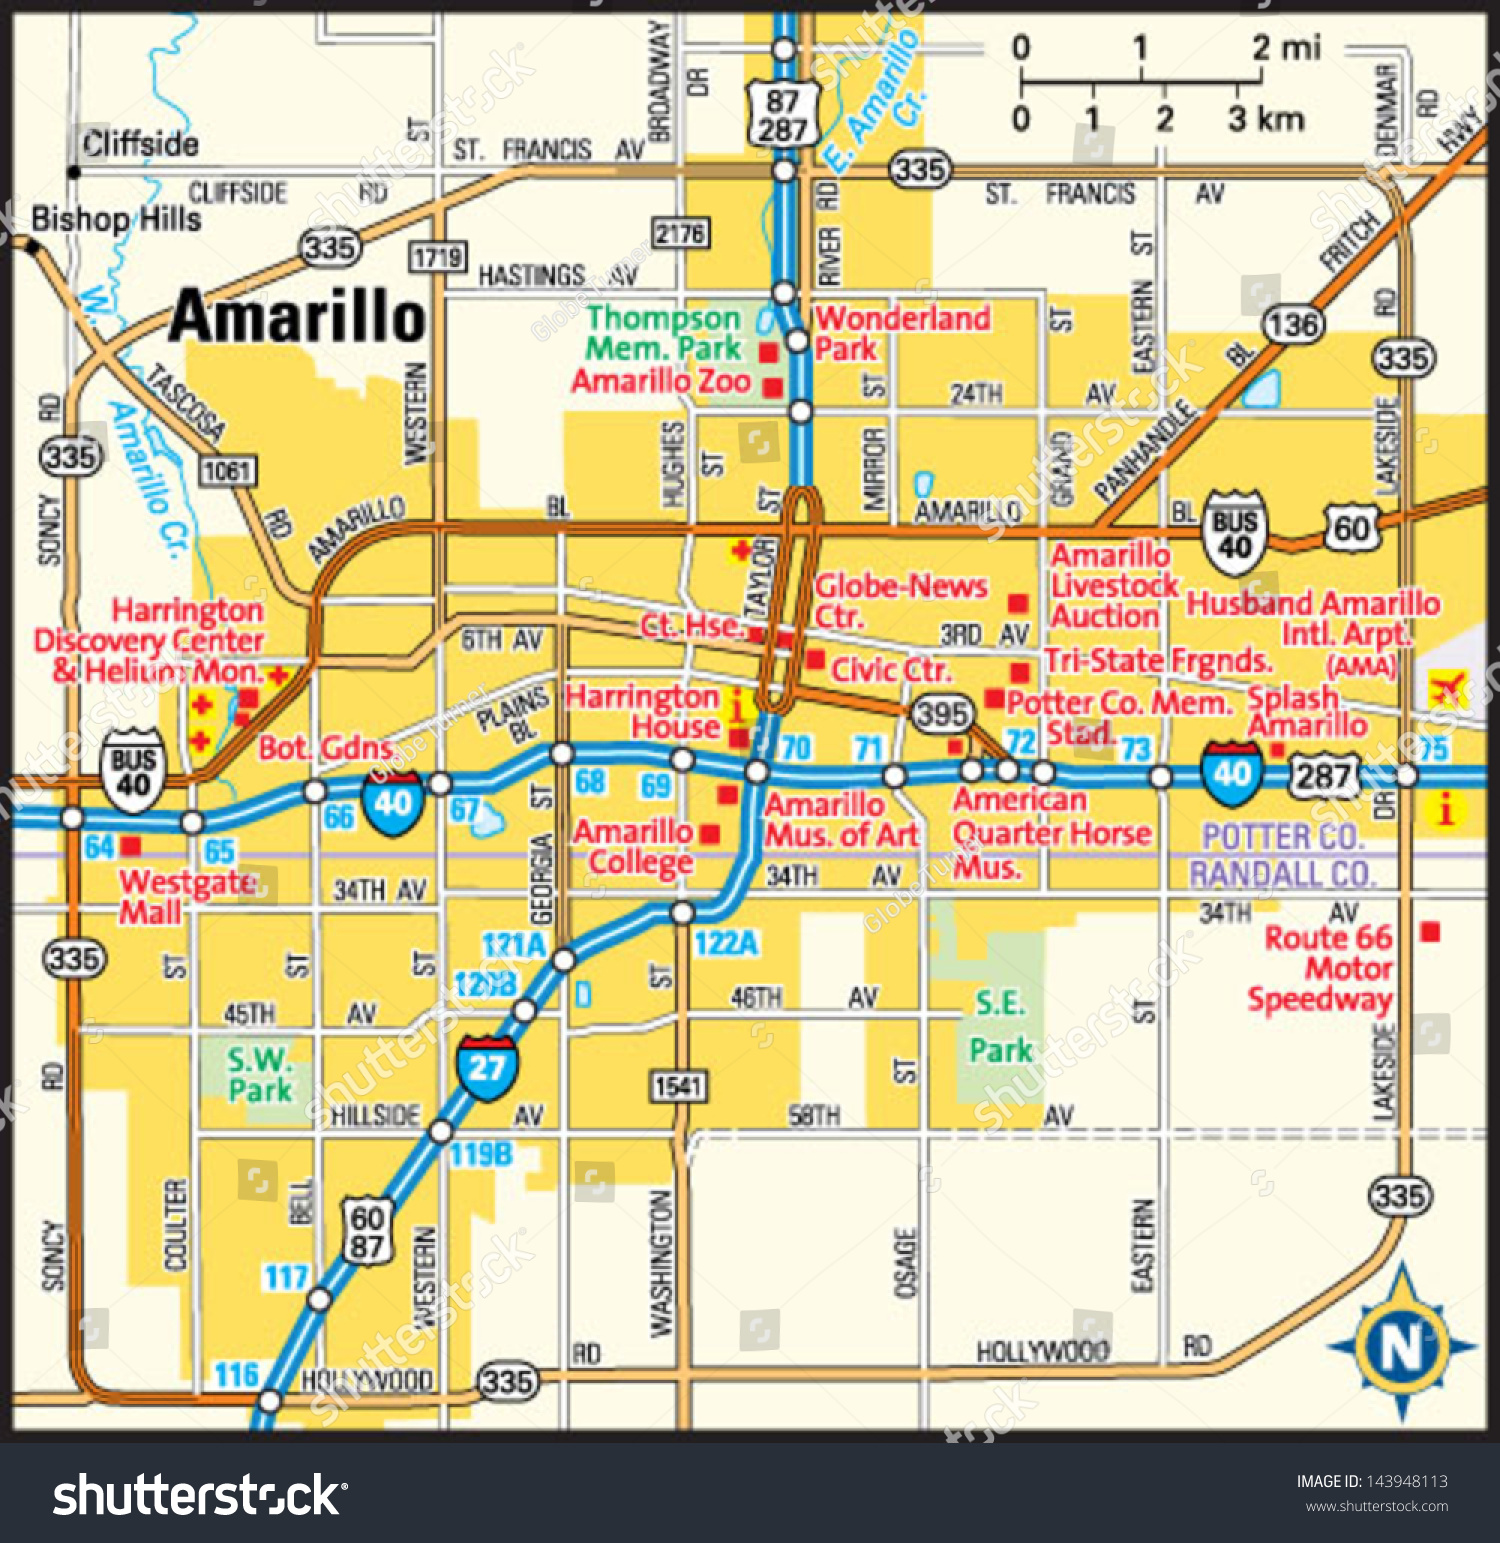 Amarillo Texas Area Map Stock Vector Illustration 143948113 Shutterstock